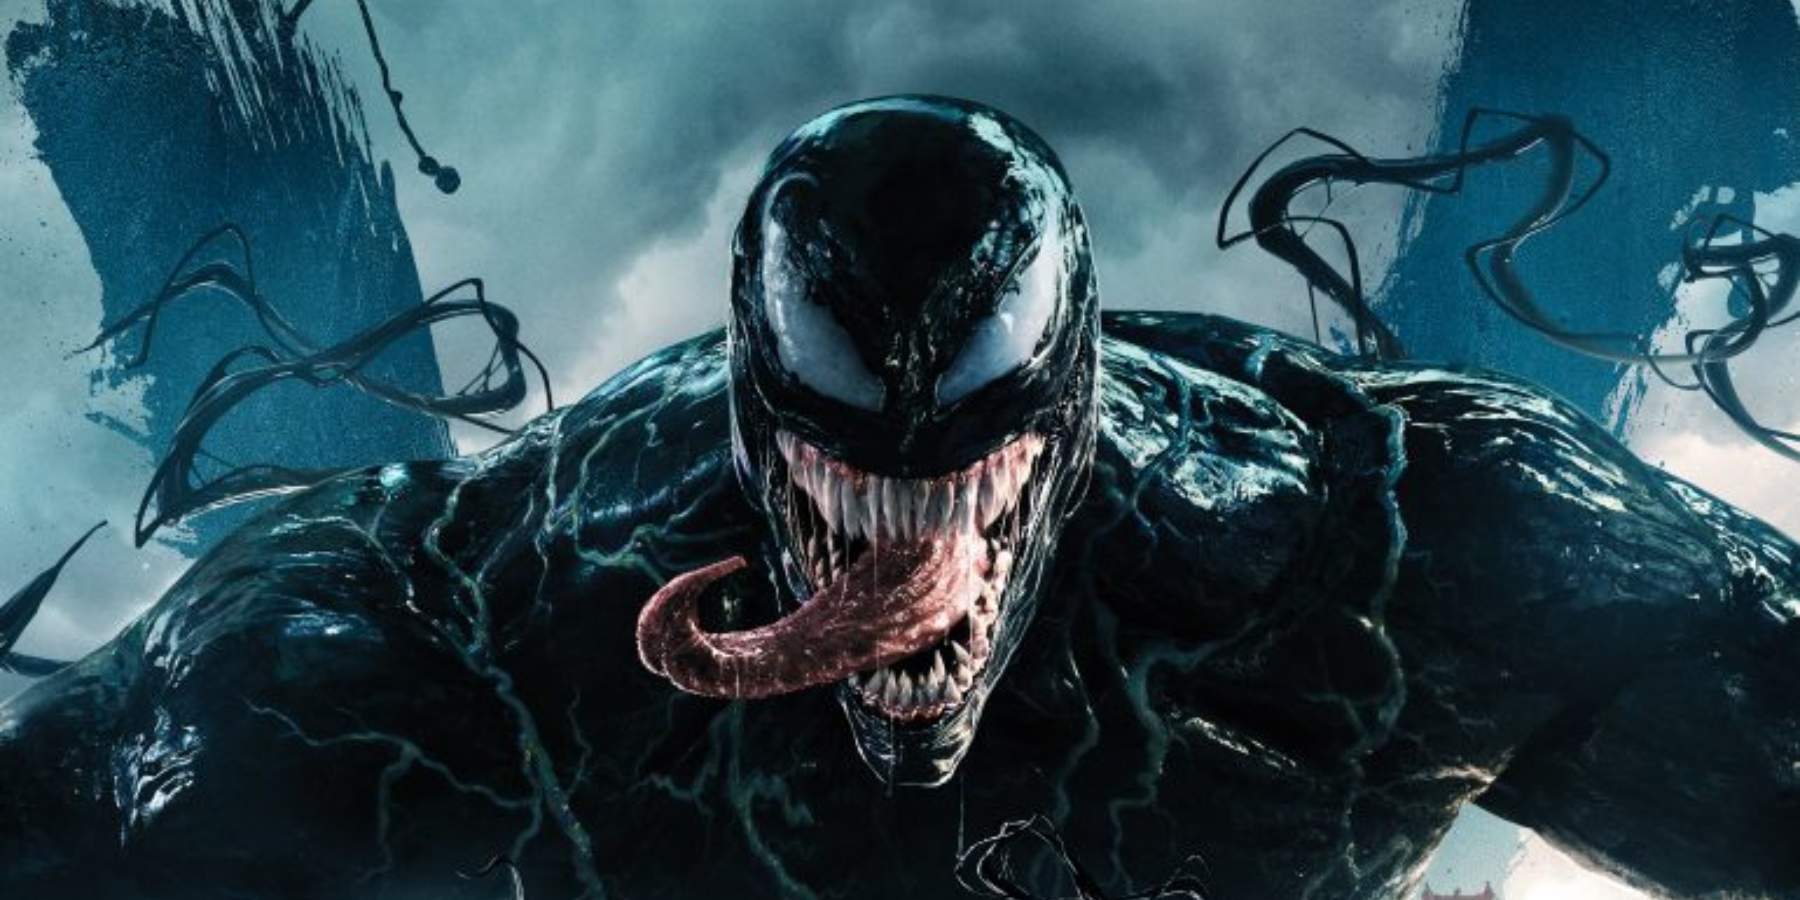 Venom rompe records de taquilla